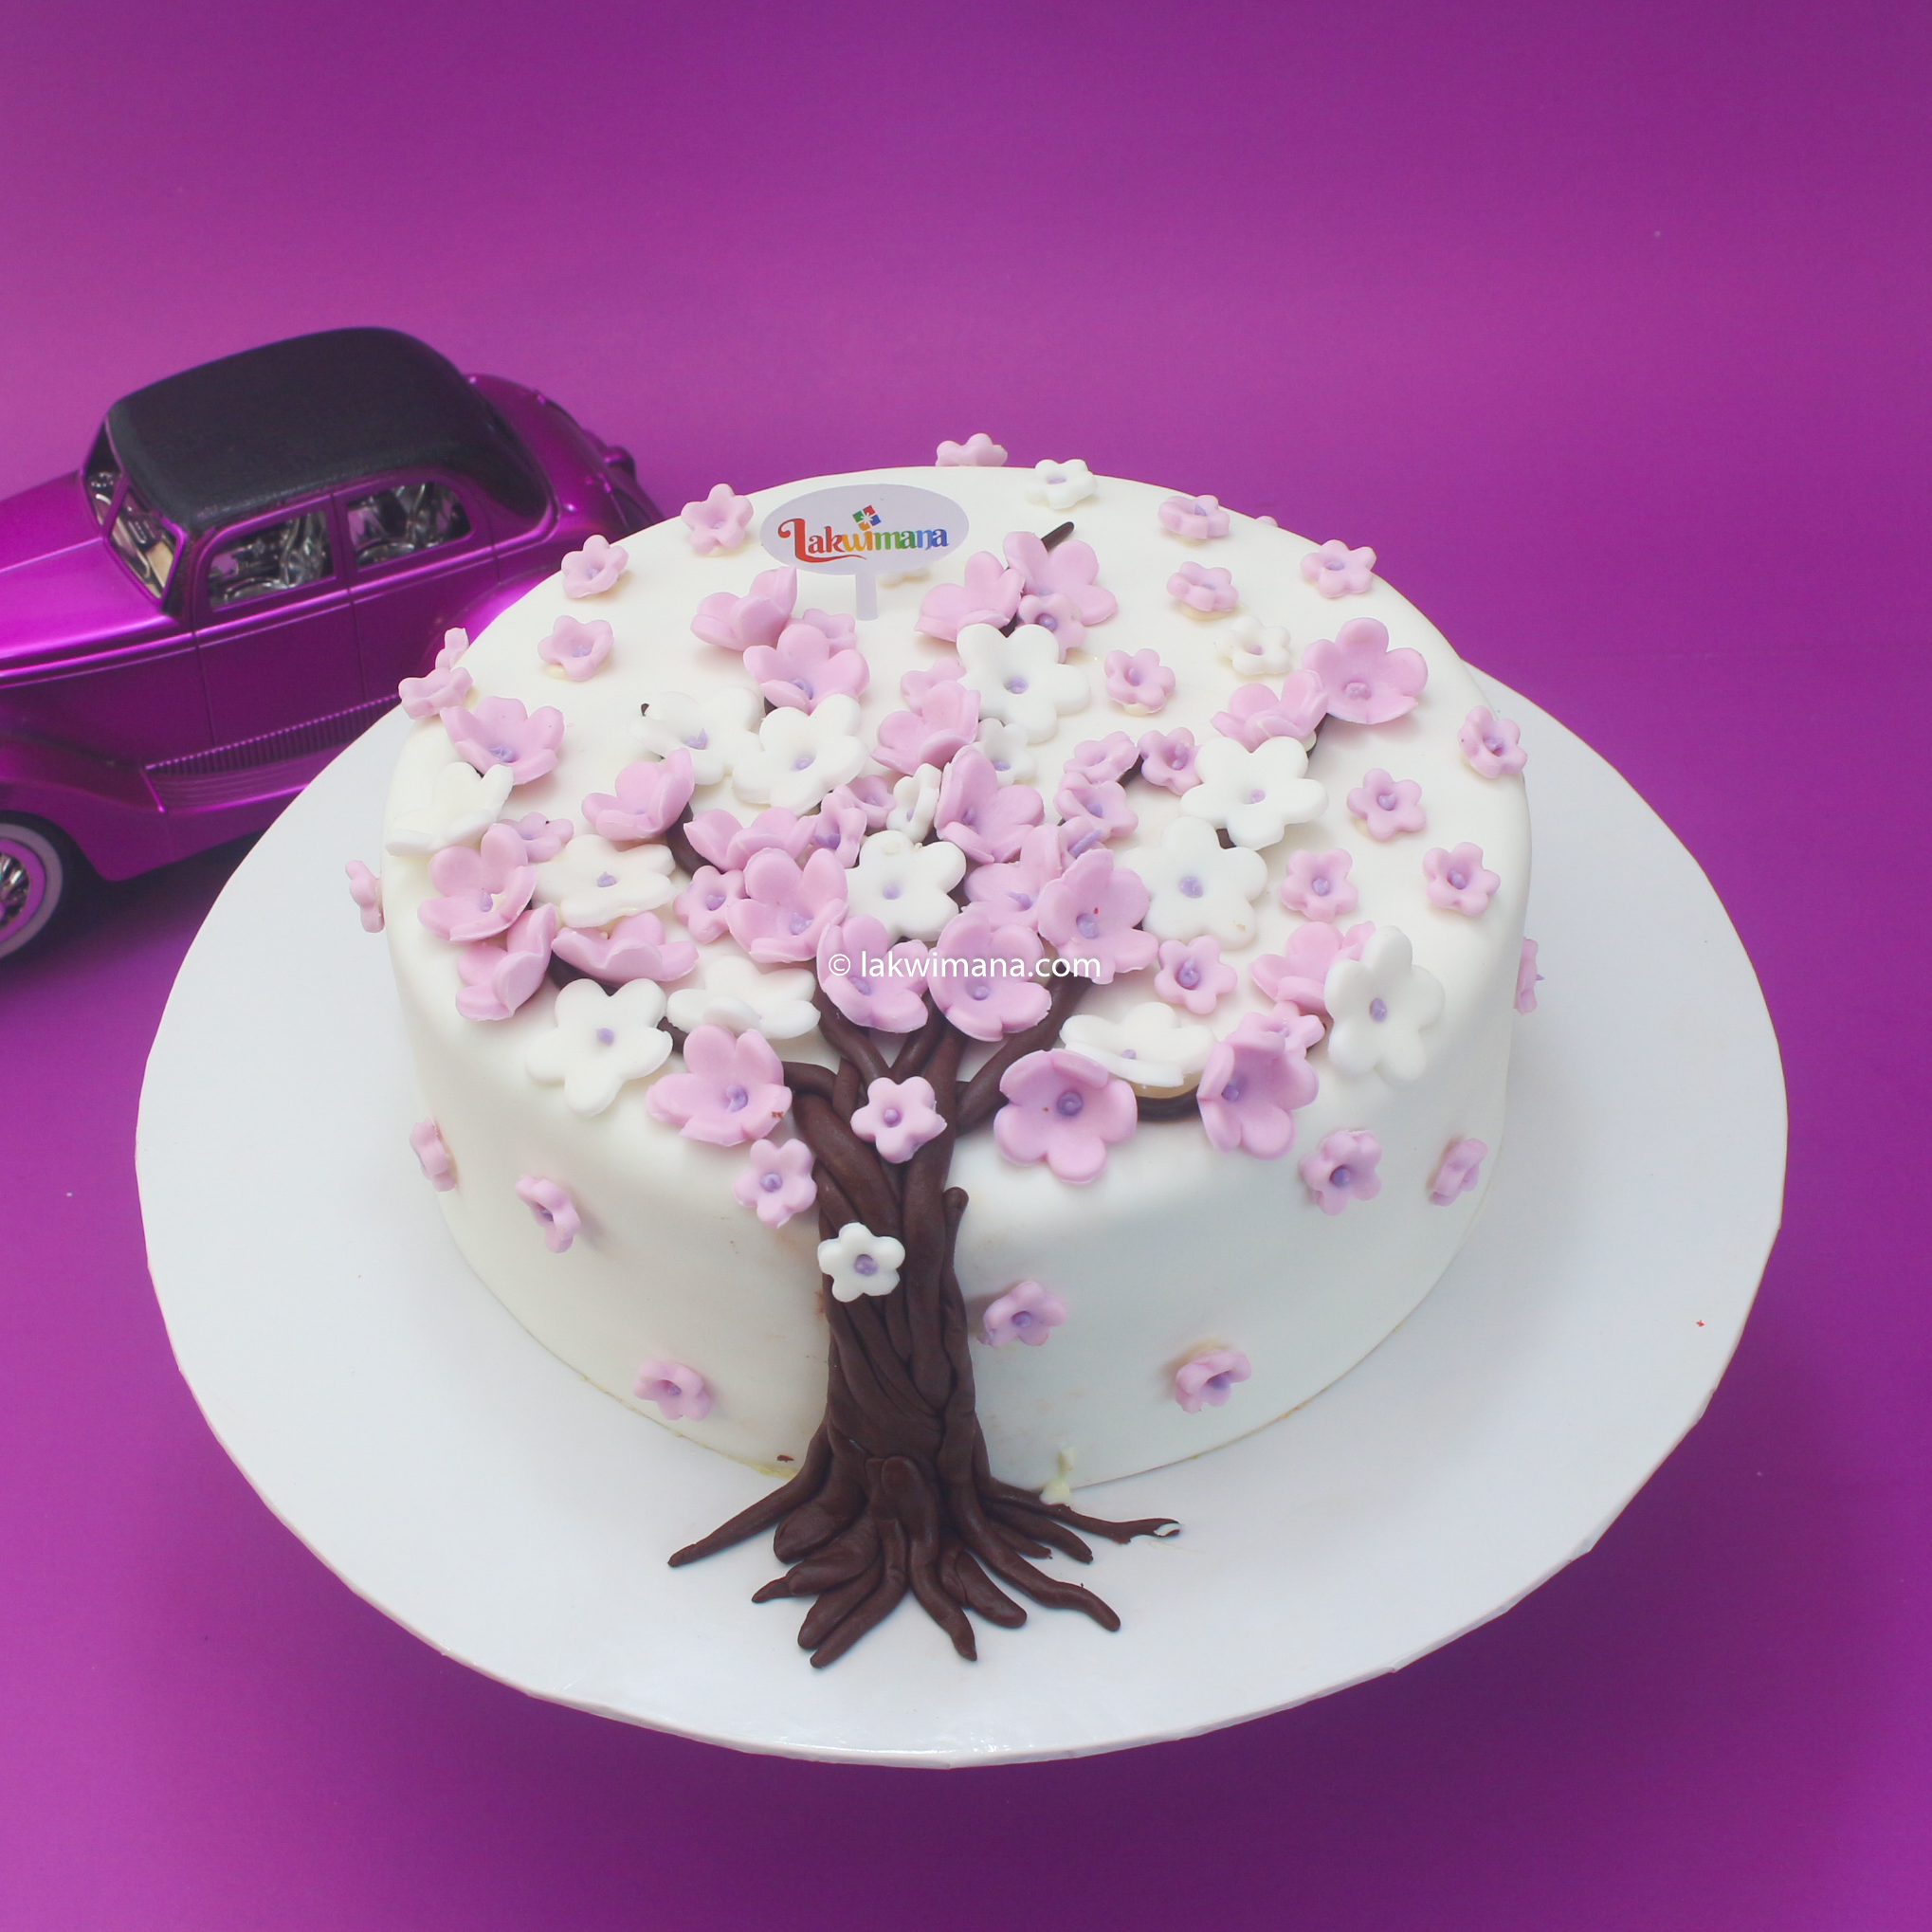 Lover Tree cake 1.5kg